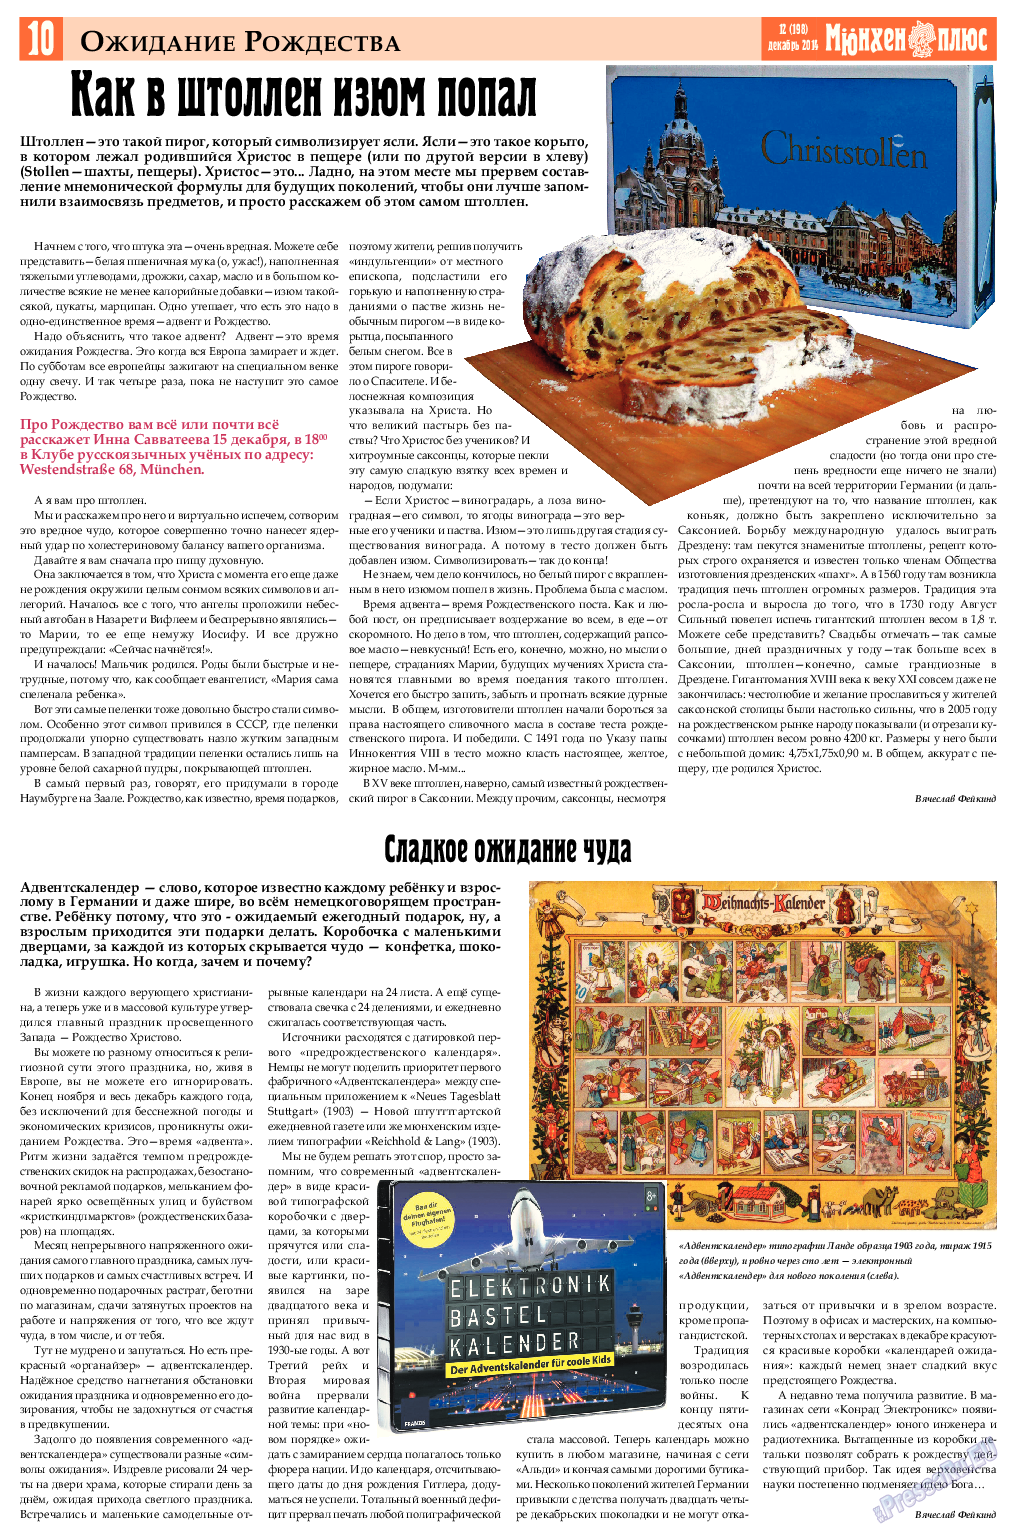 Германия плюс, газета. 2014 №12 стр.10